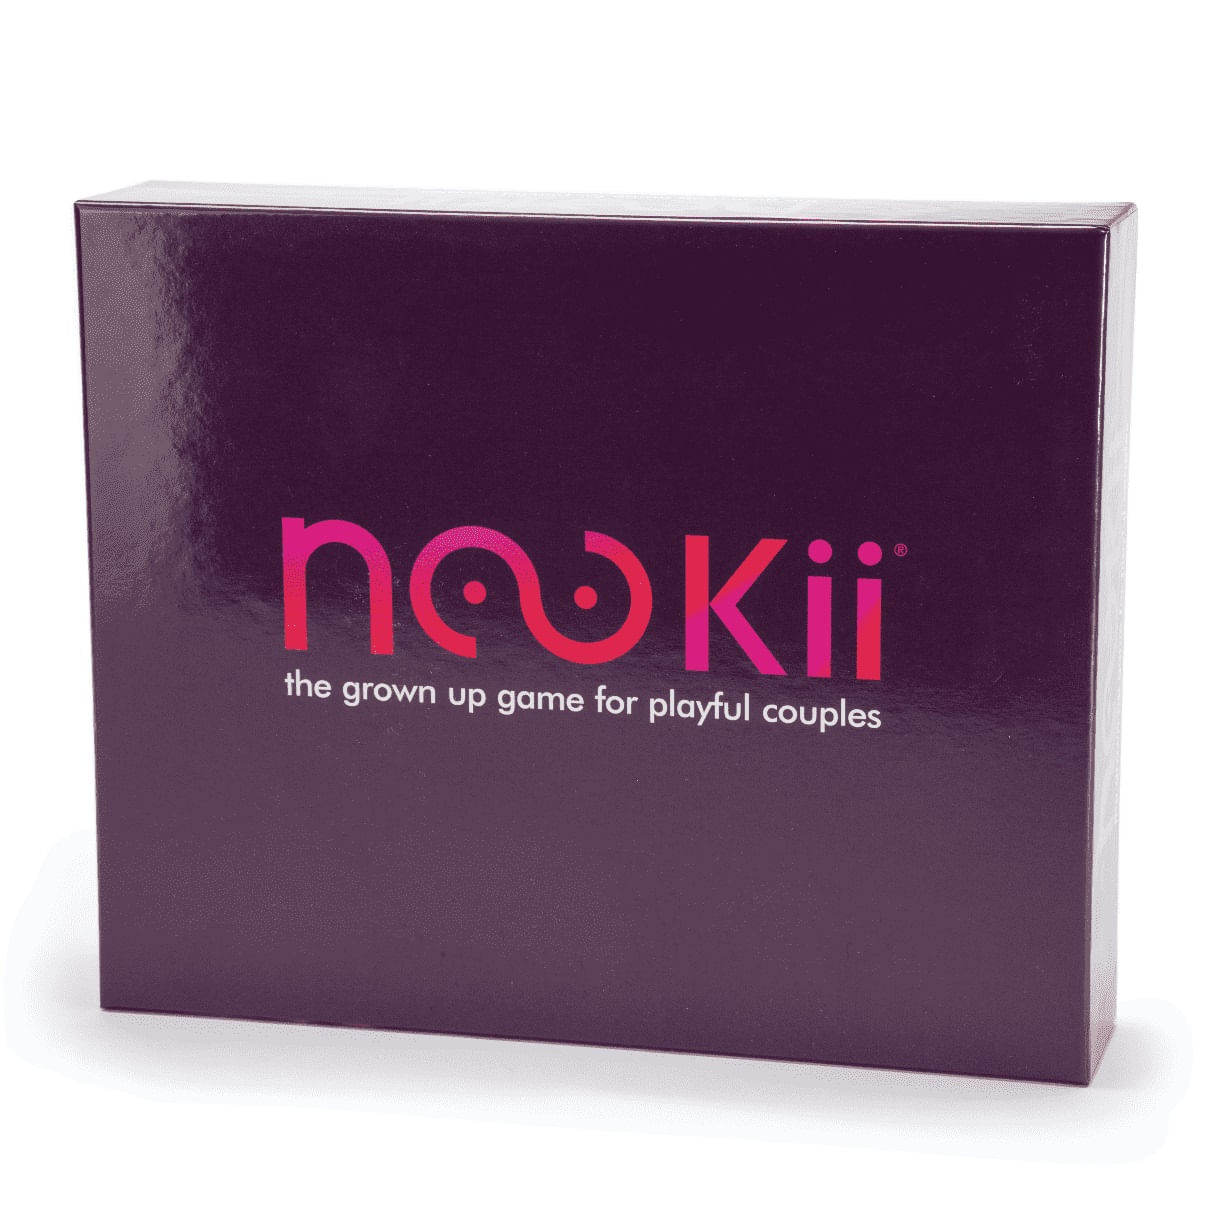 Joc pentru cuplu Nookii, provocari erotice in limba engleza